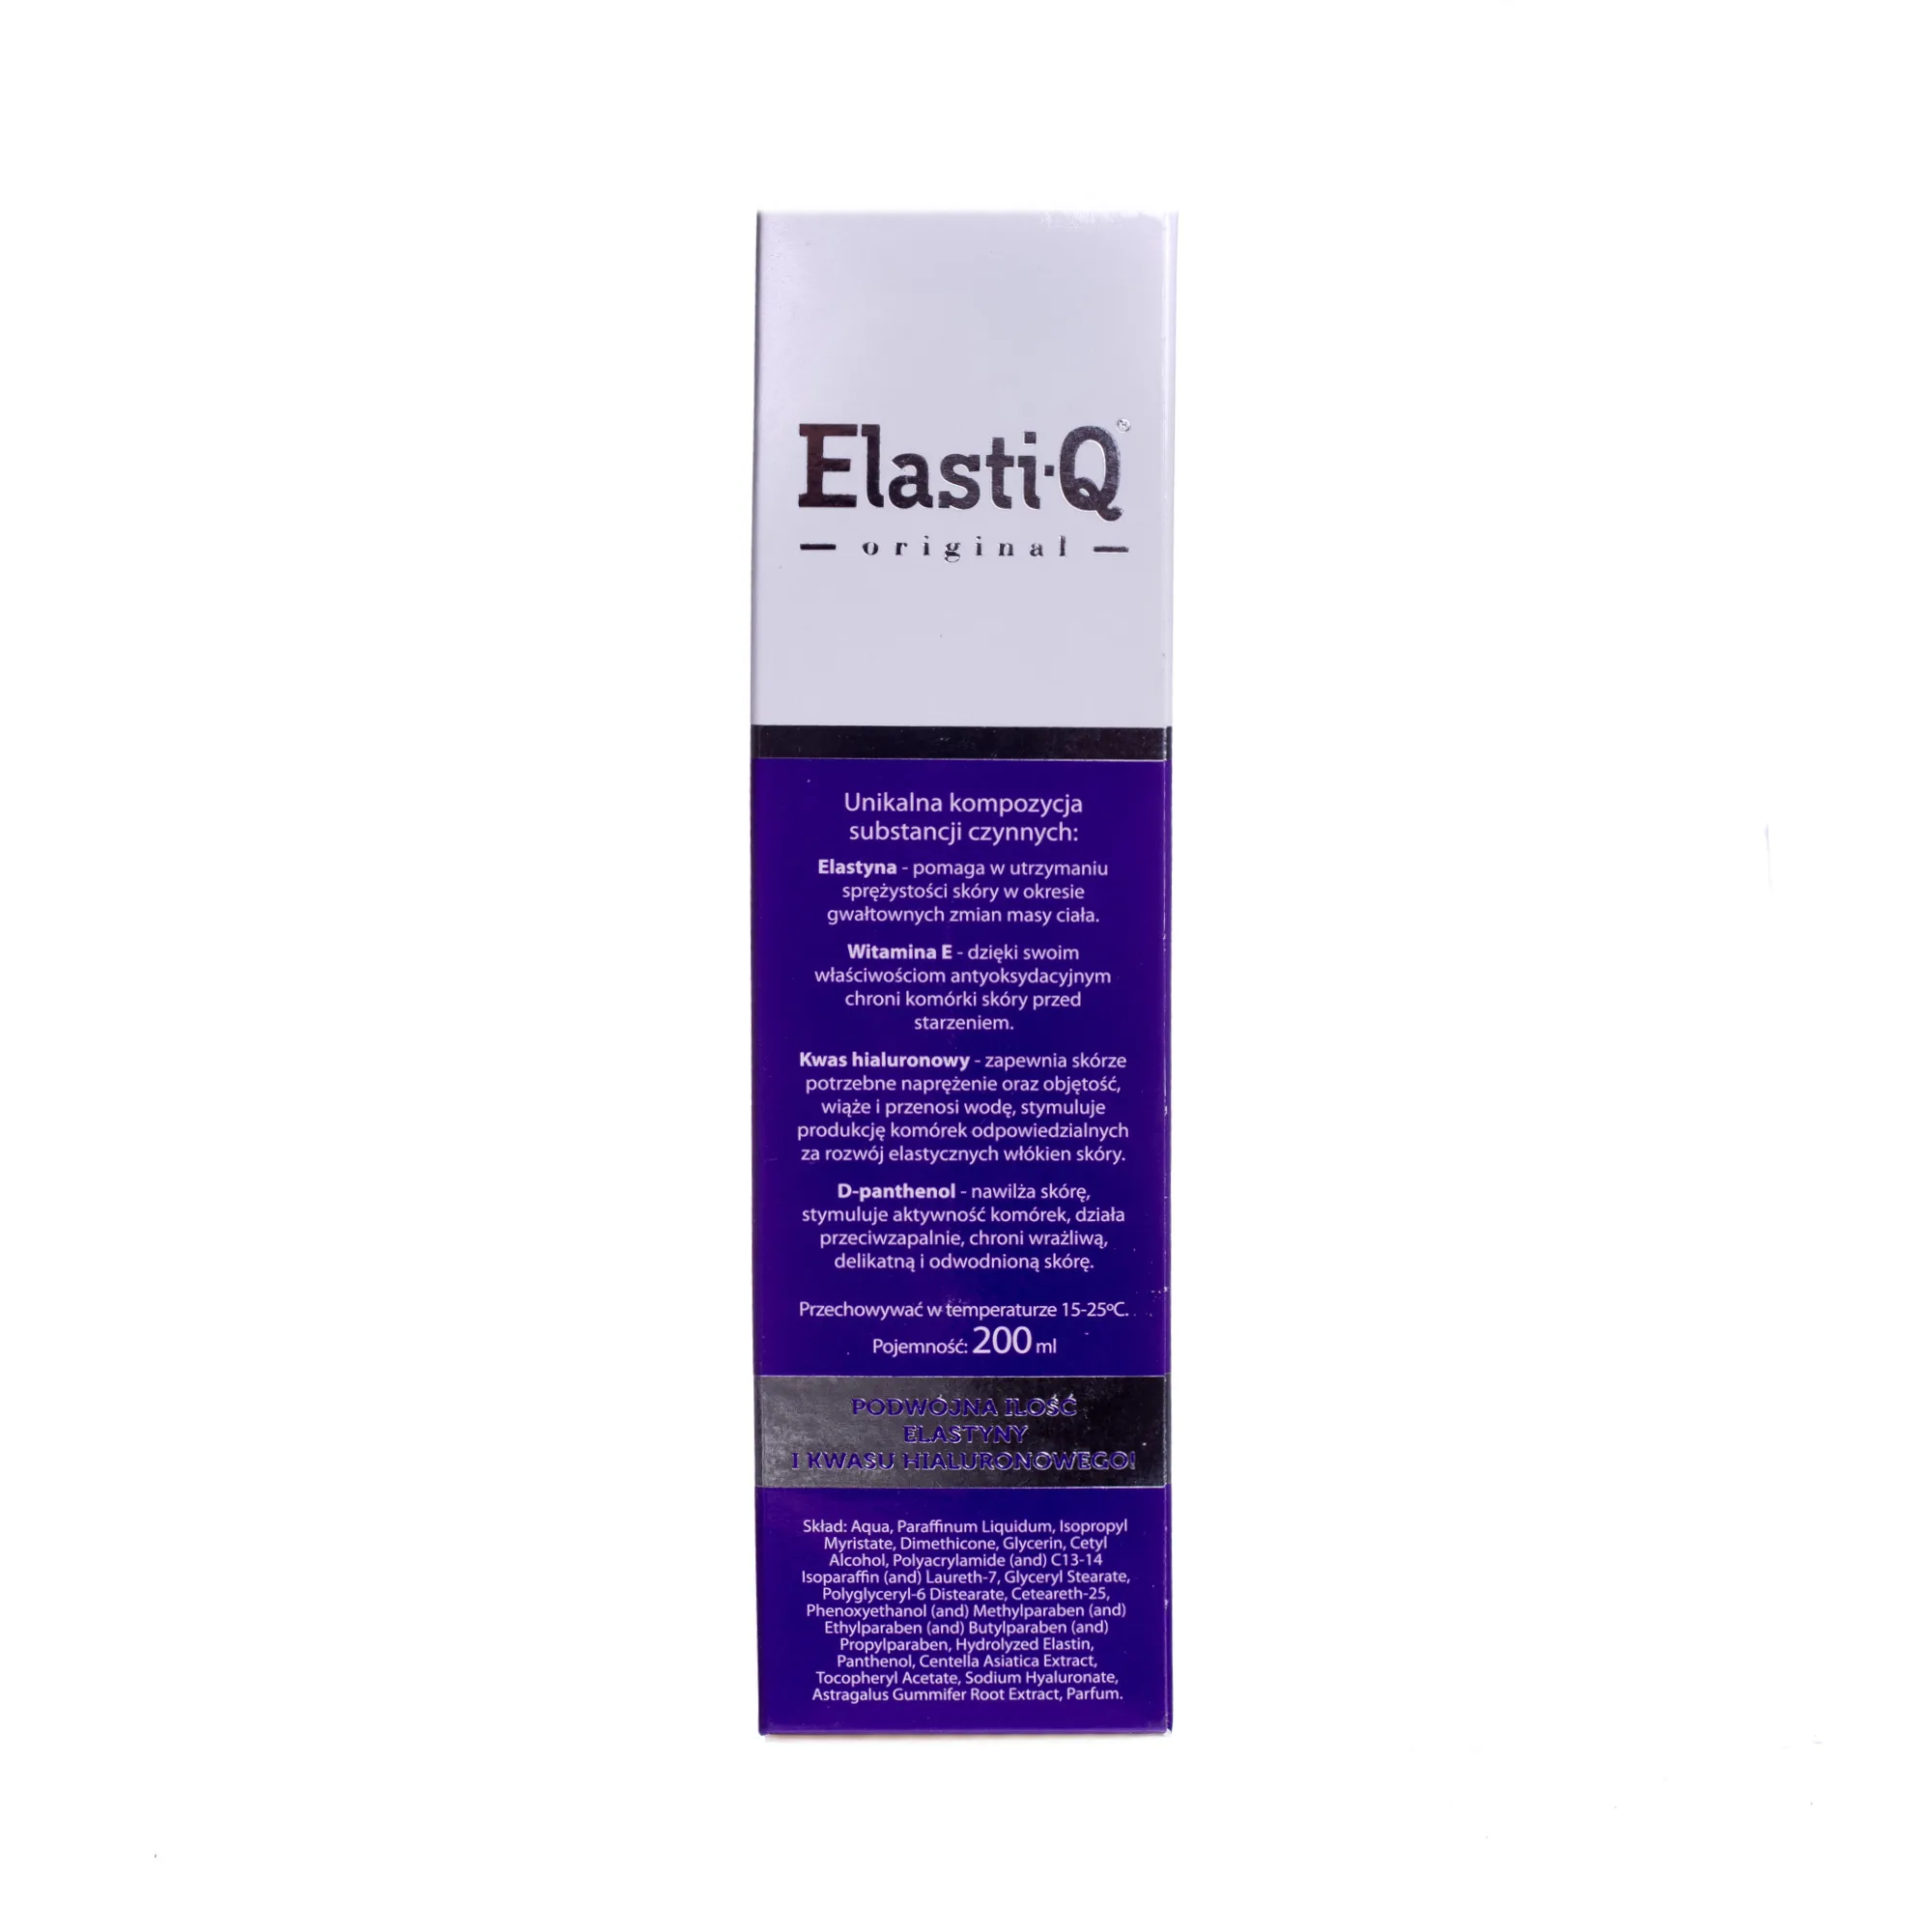 Elasti-Q Original, Krem do ciała zapobiegający rozstępom, dla kobiet w ciąży i po porodzie, 200 ml 